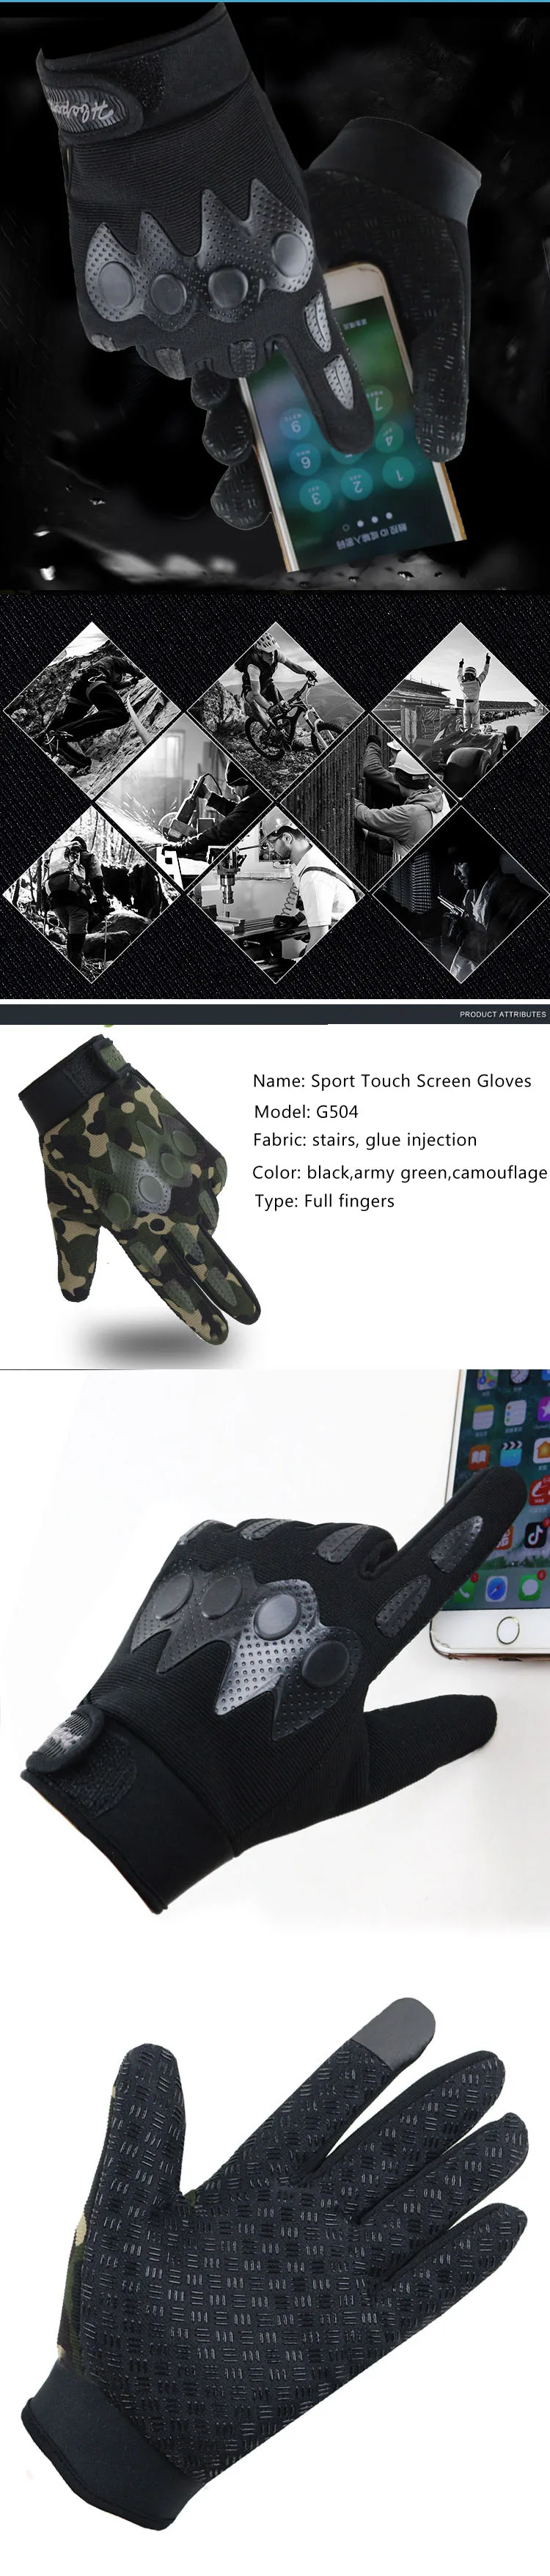 Длинные перчатки хранитель для мужчин и женщин полный палец рукавицы Guante военные тактические сенсорный экран кожа замша Спорт Цикл